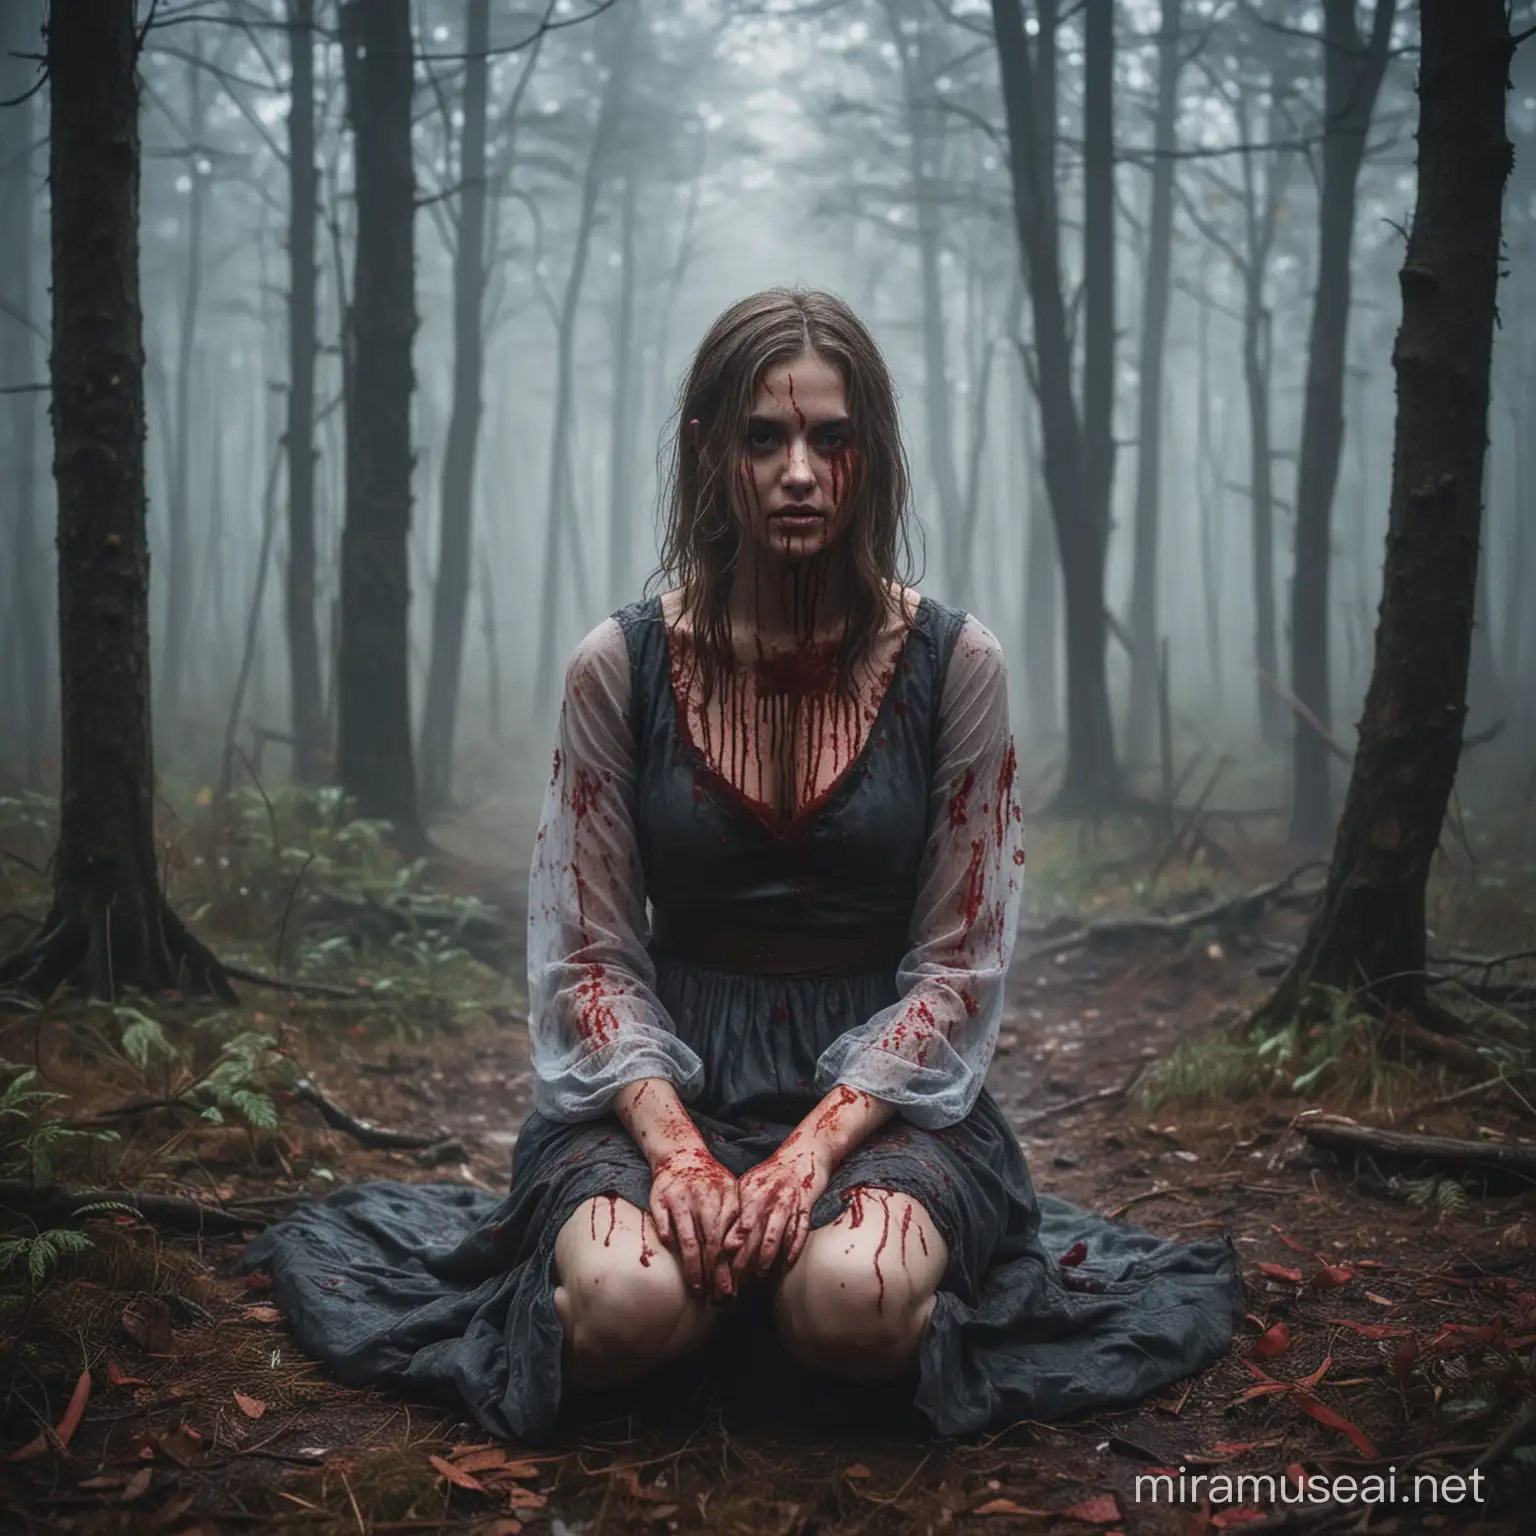 Девушка сидит в туманном лесу, вся покрыта кровью